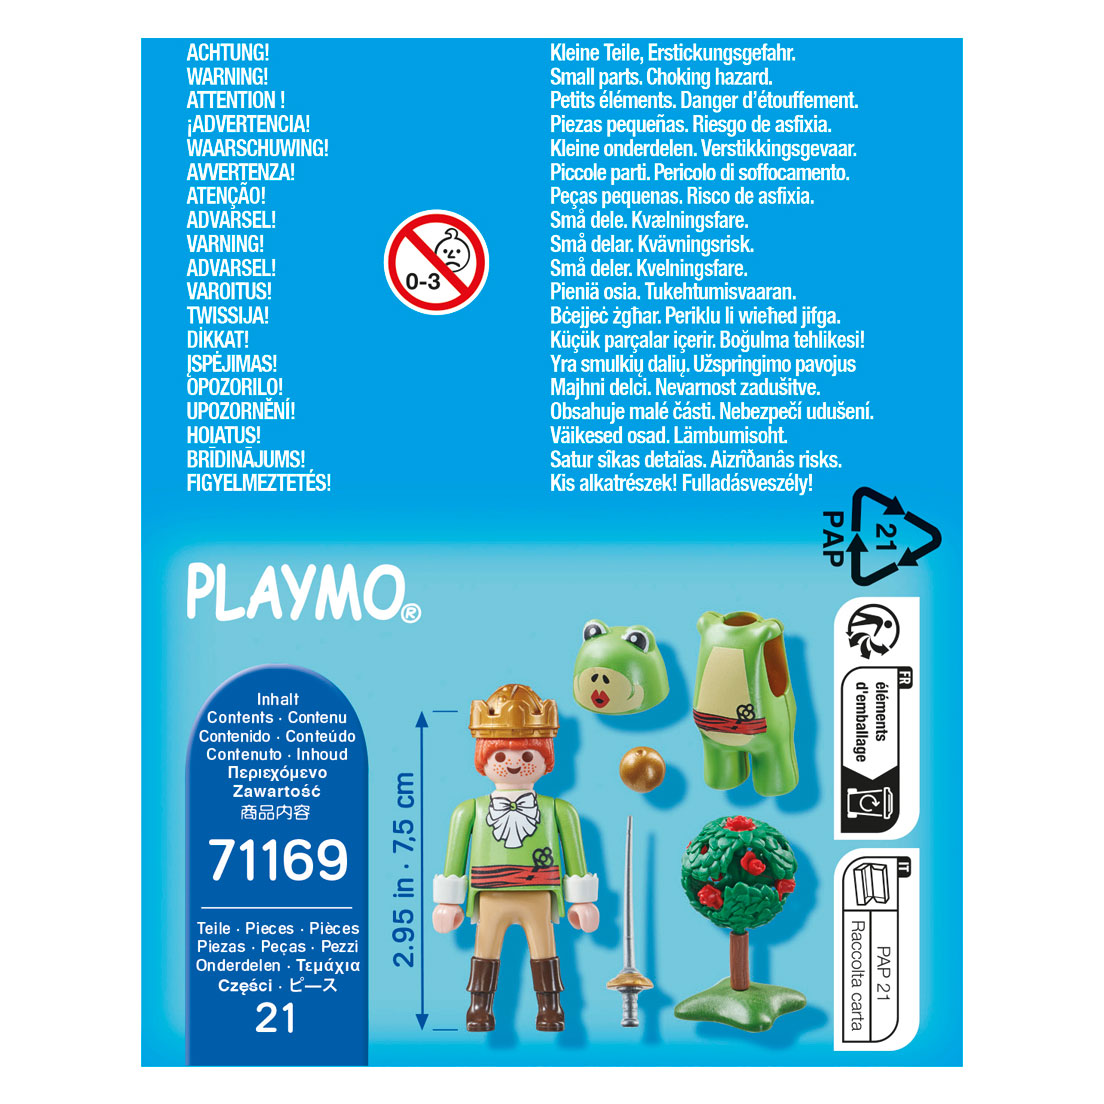 Playmobil Specials Kikkerkoning - 71169